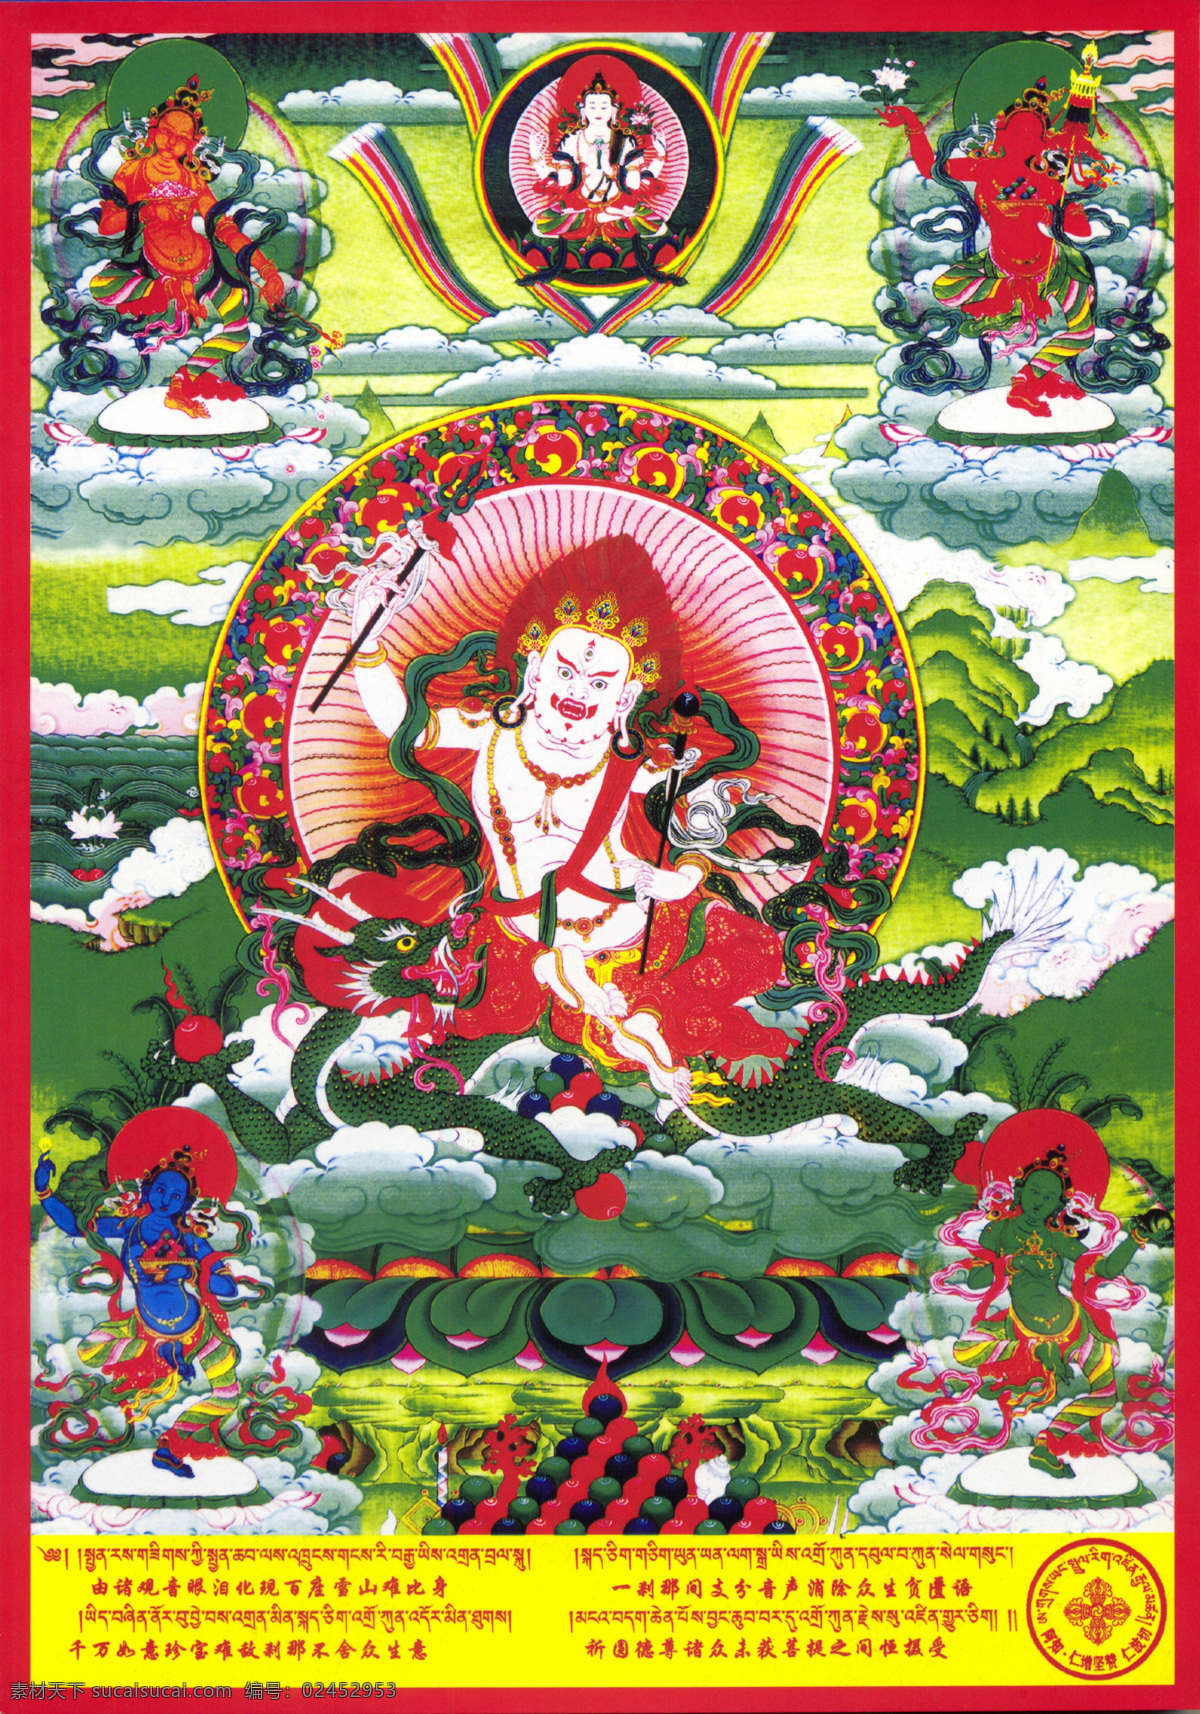 坐在 龙 上 神仙 坐骑 唐卡 彩绘 佛教 宗教 信仰 卷轴画 书画文字 文化艺术